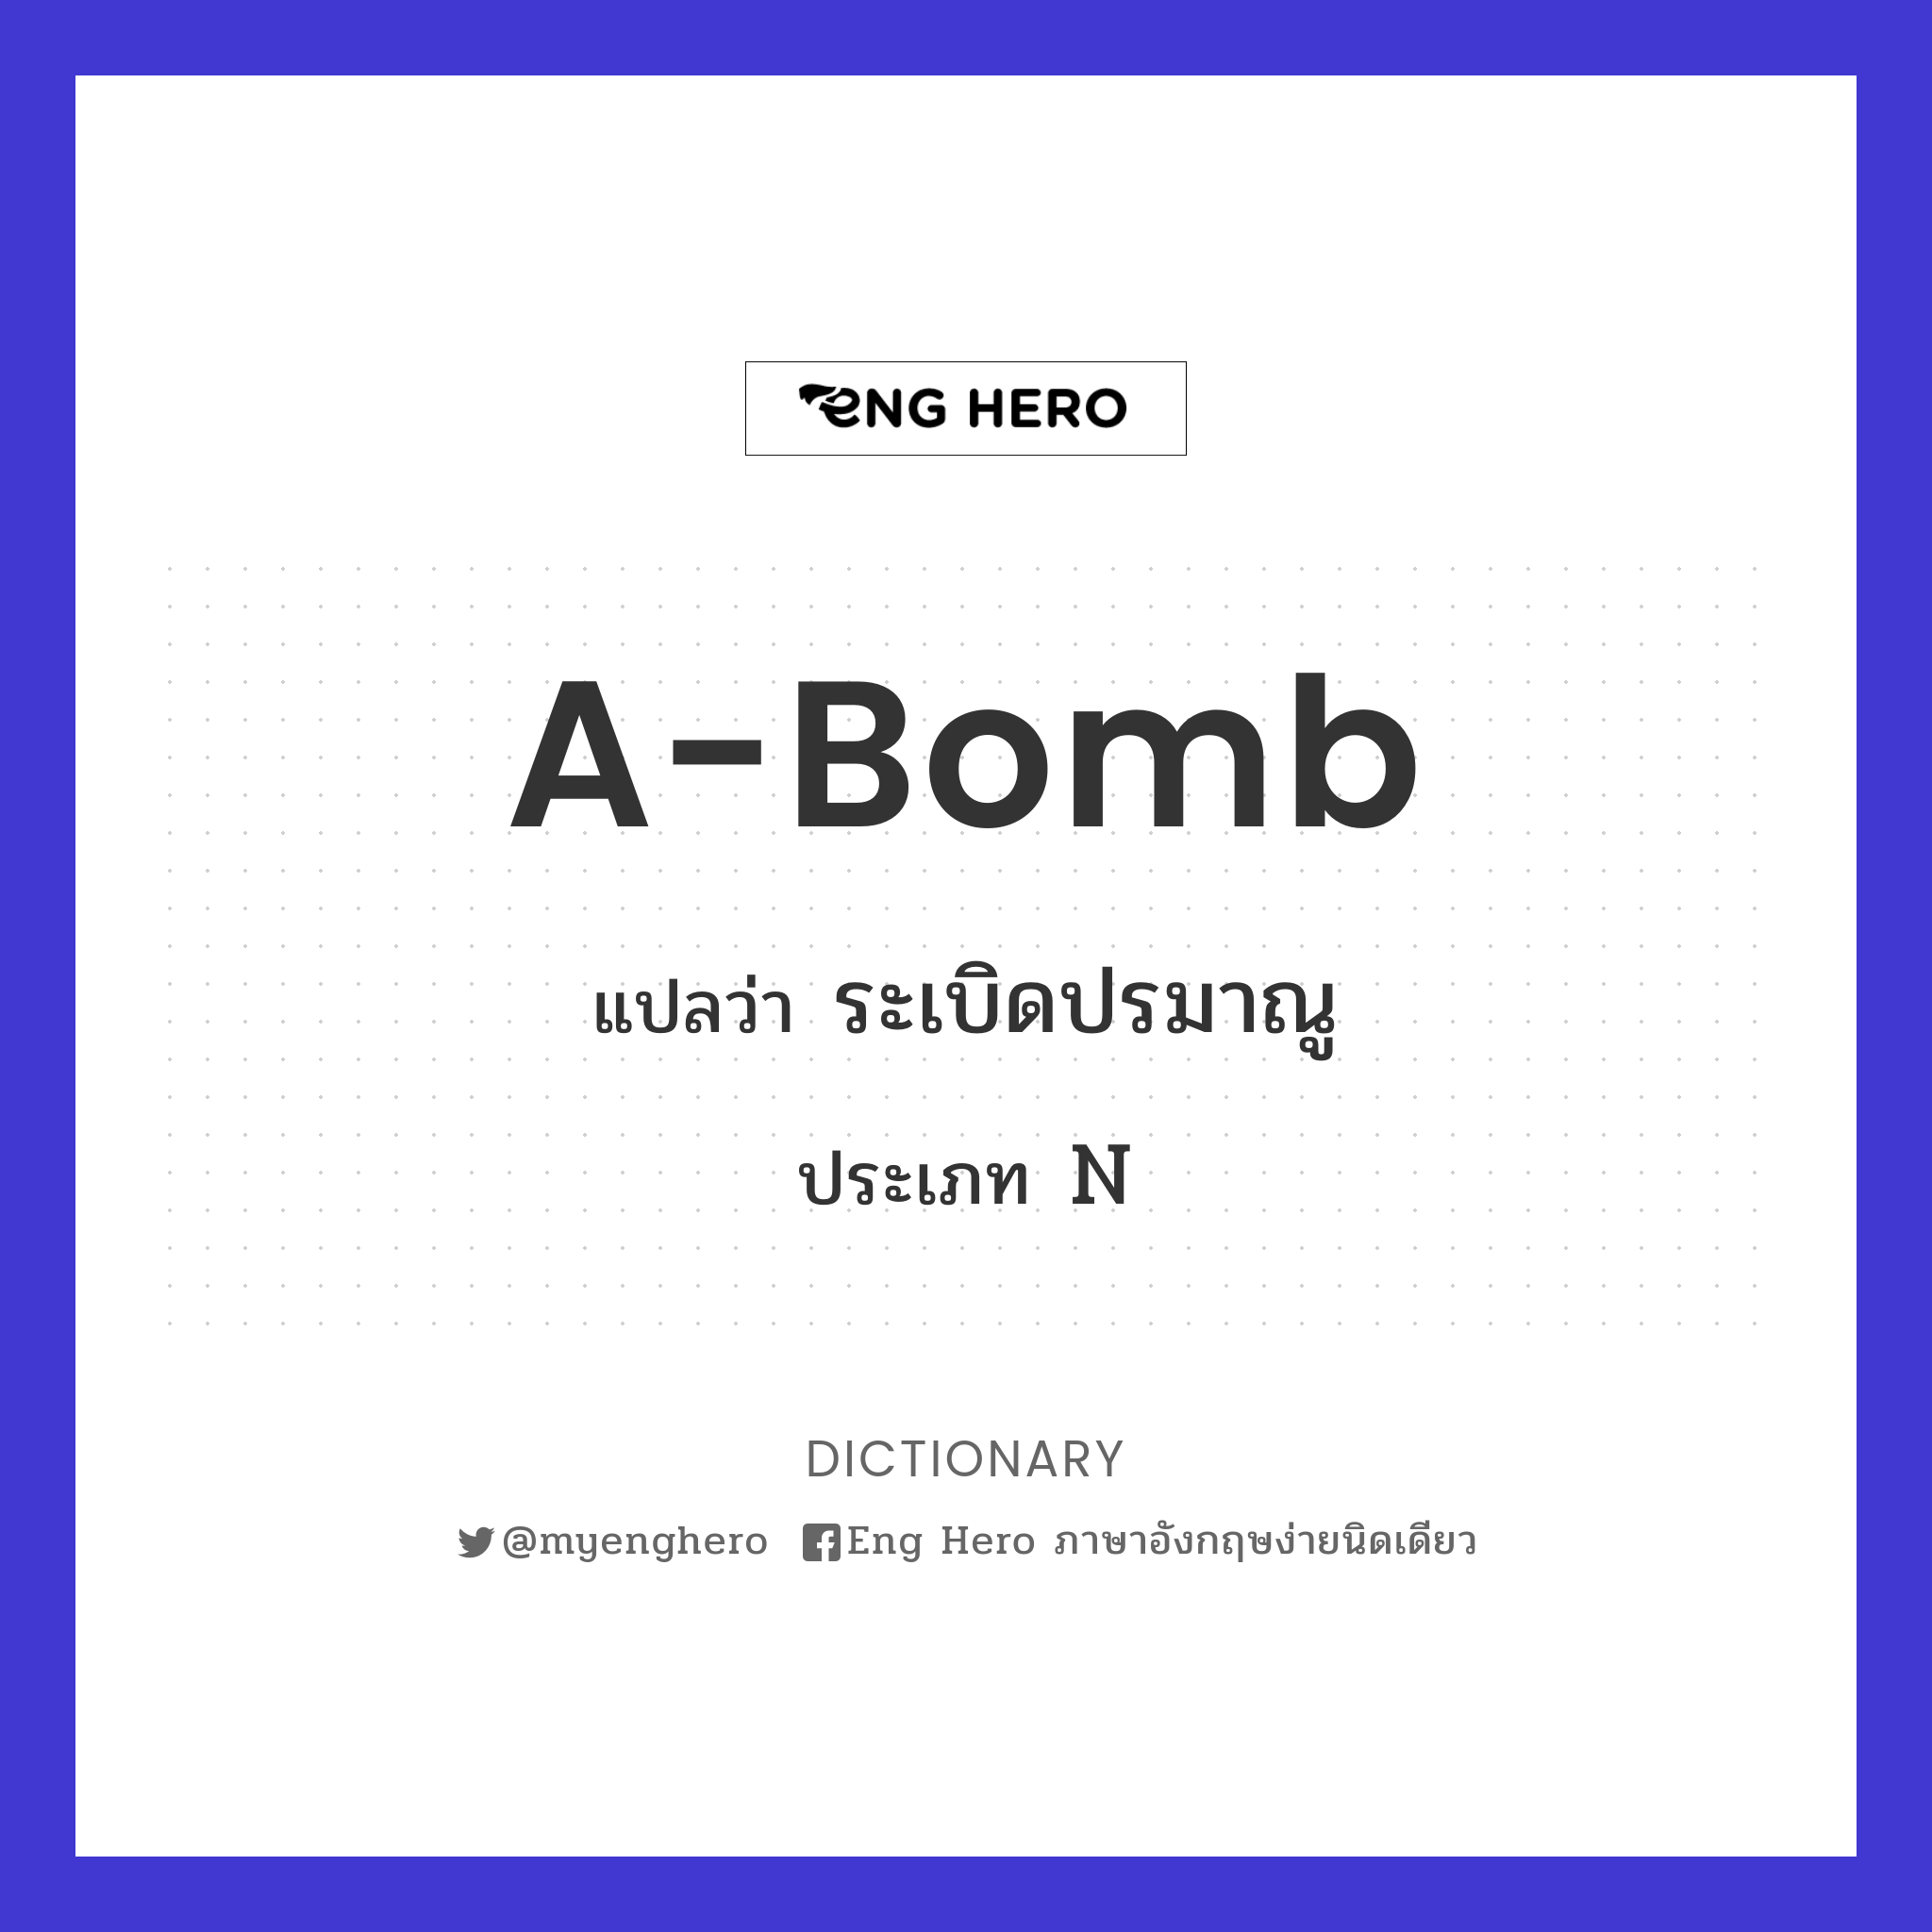 A-bomb